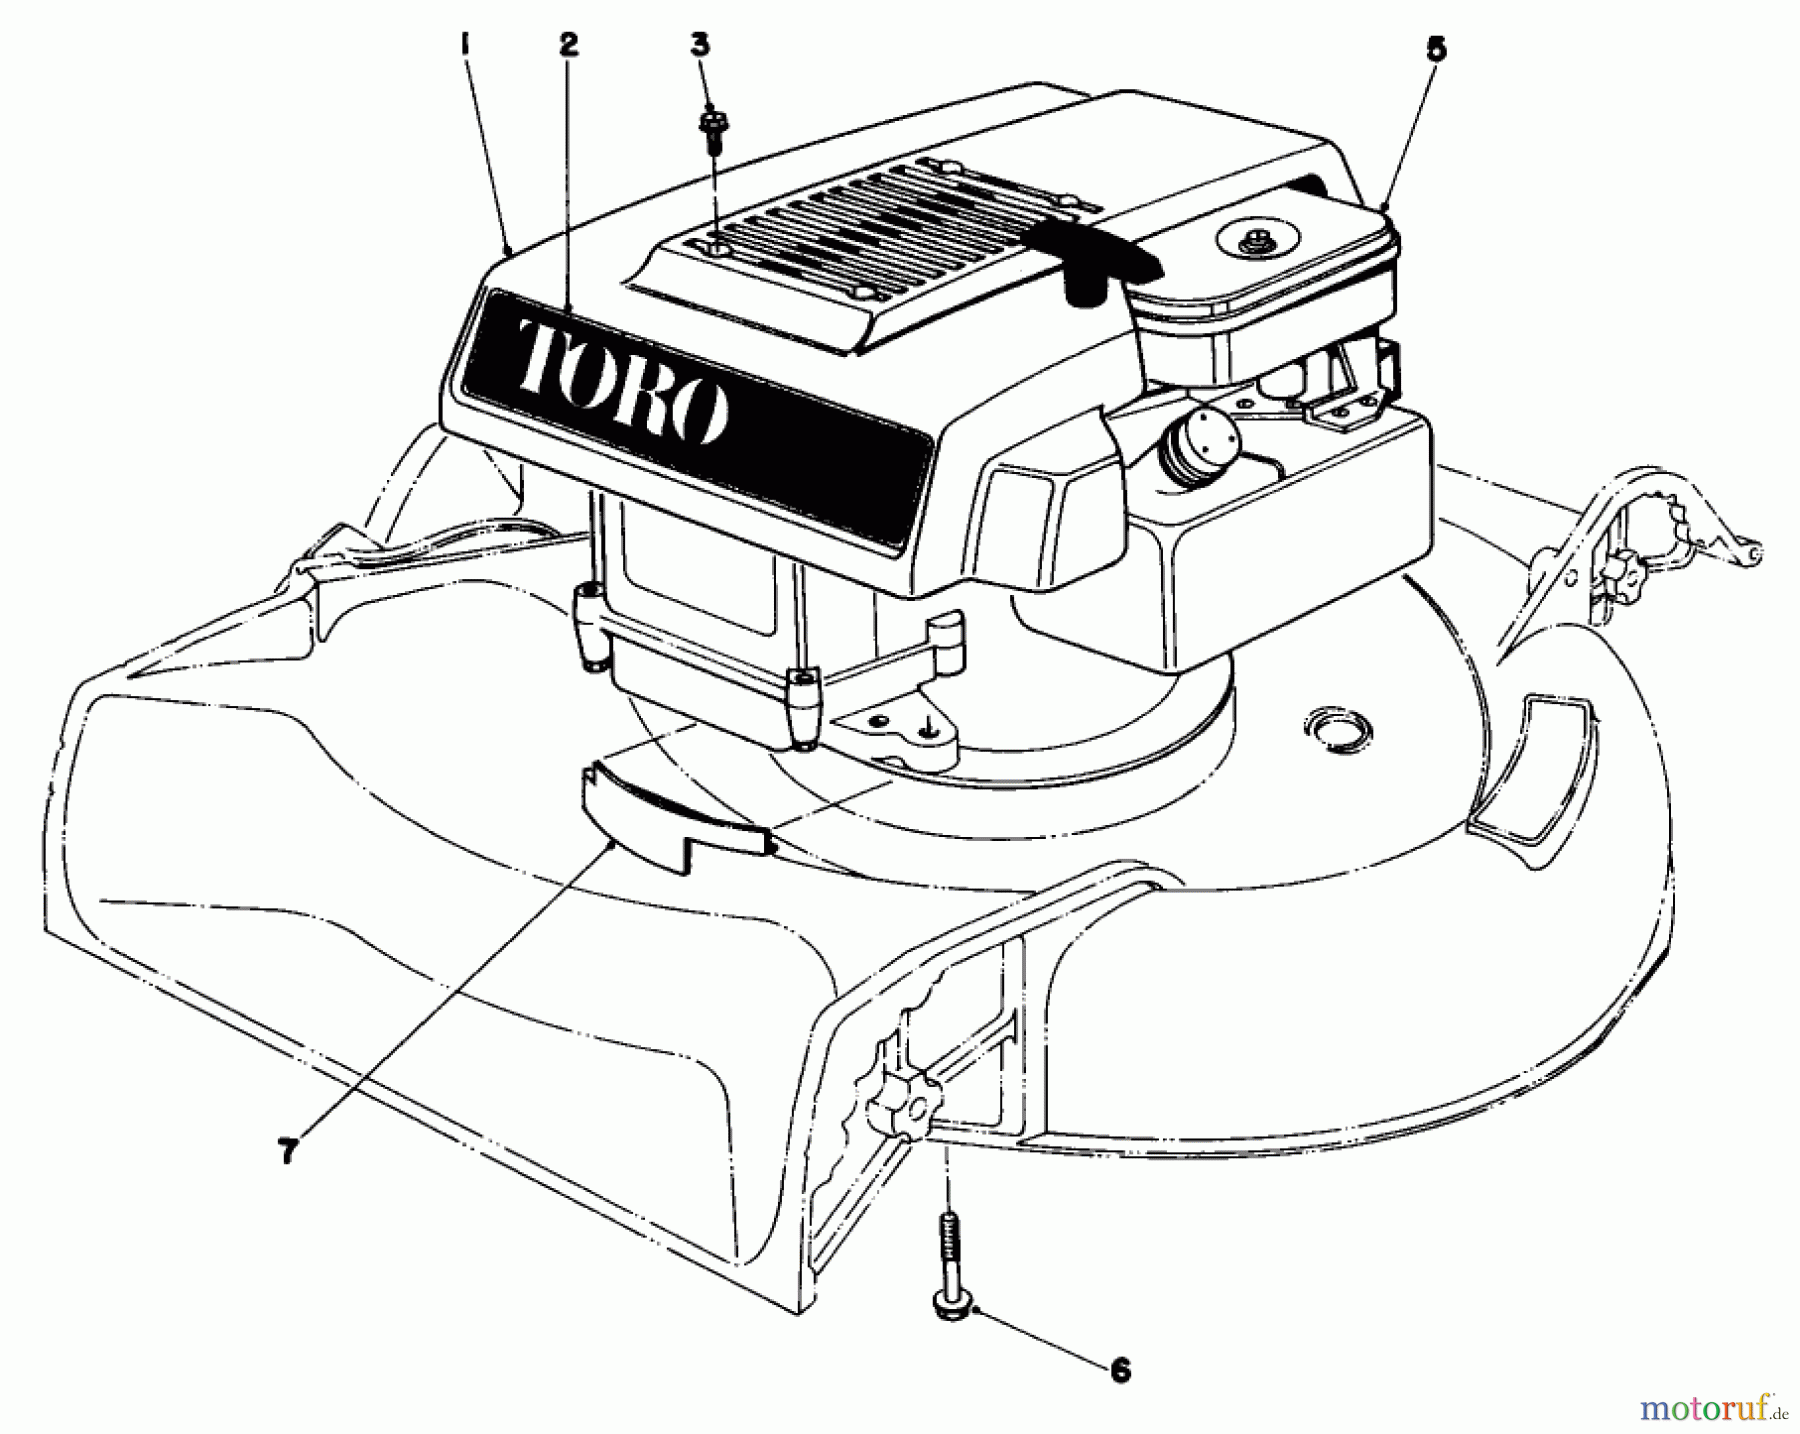  Toro Neu Mowers, Walk-Behind Seite 1 16009 - Toro Whirlwind II Lawnmower, 1979 (9000001-9999999) ENGINE ASSEMBLY MODEL 16009 AND 16113